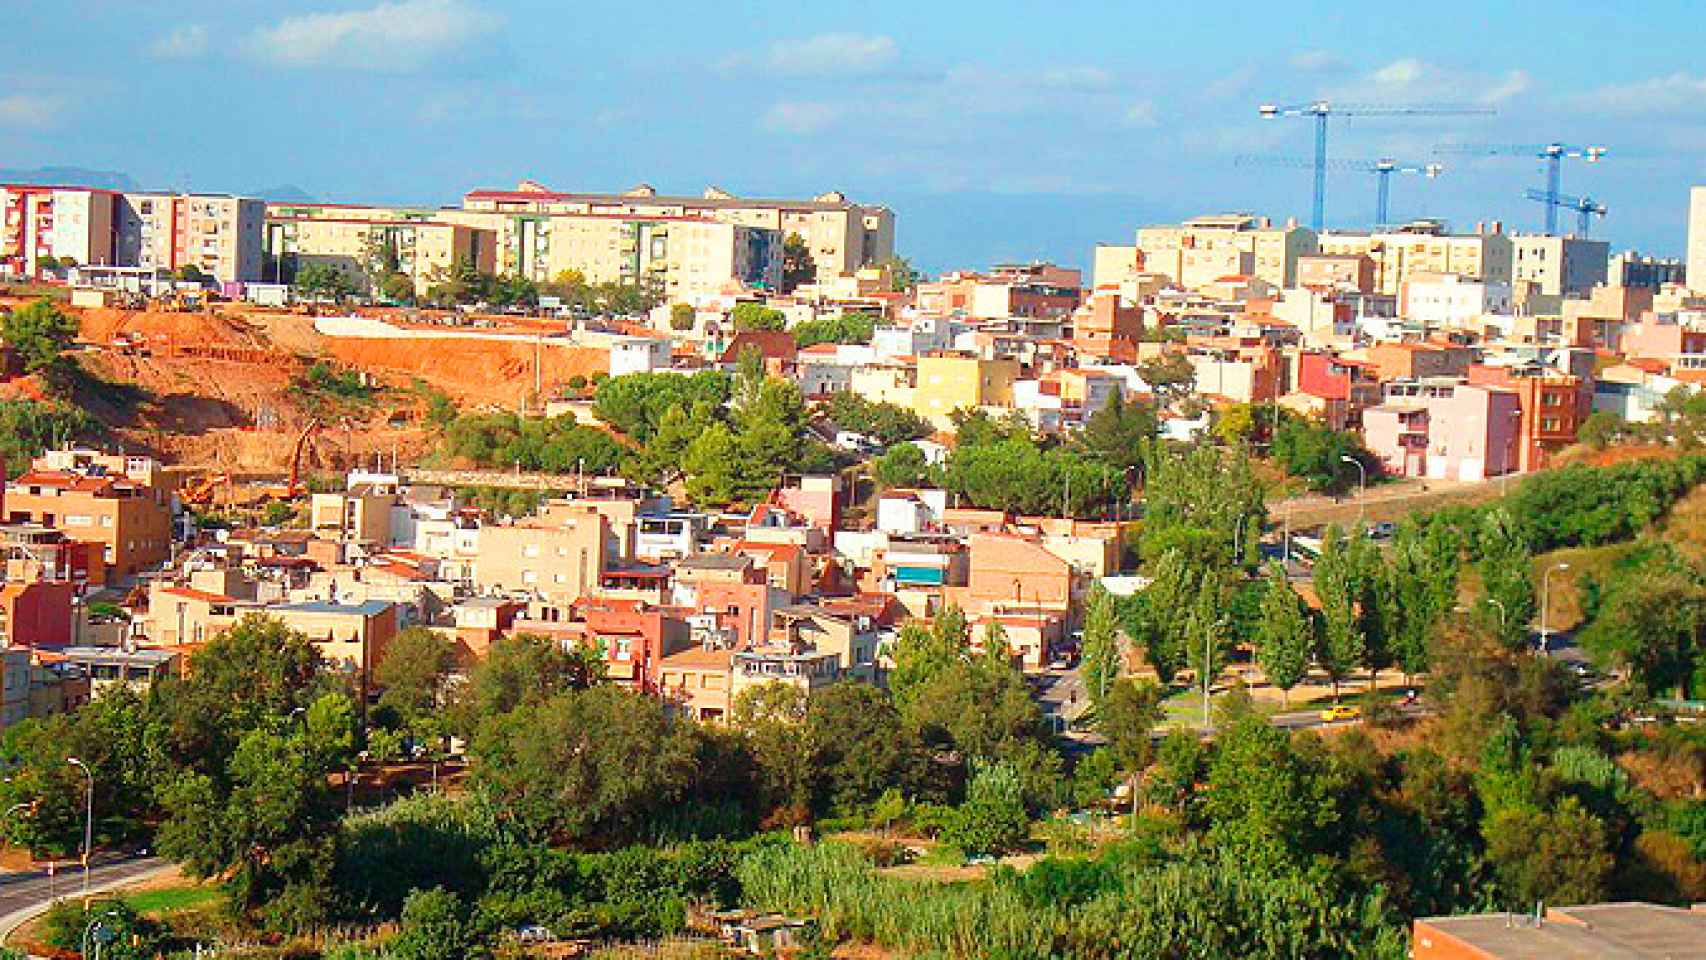 Vista del Barrio de Sabadell, Can Puiggener / @sbdterritori